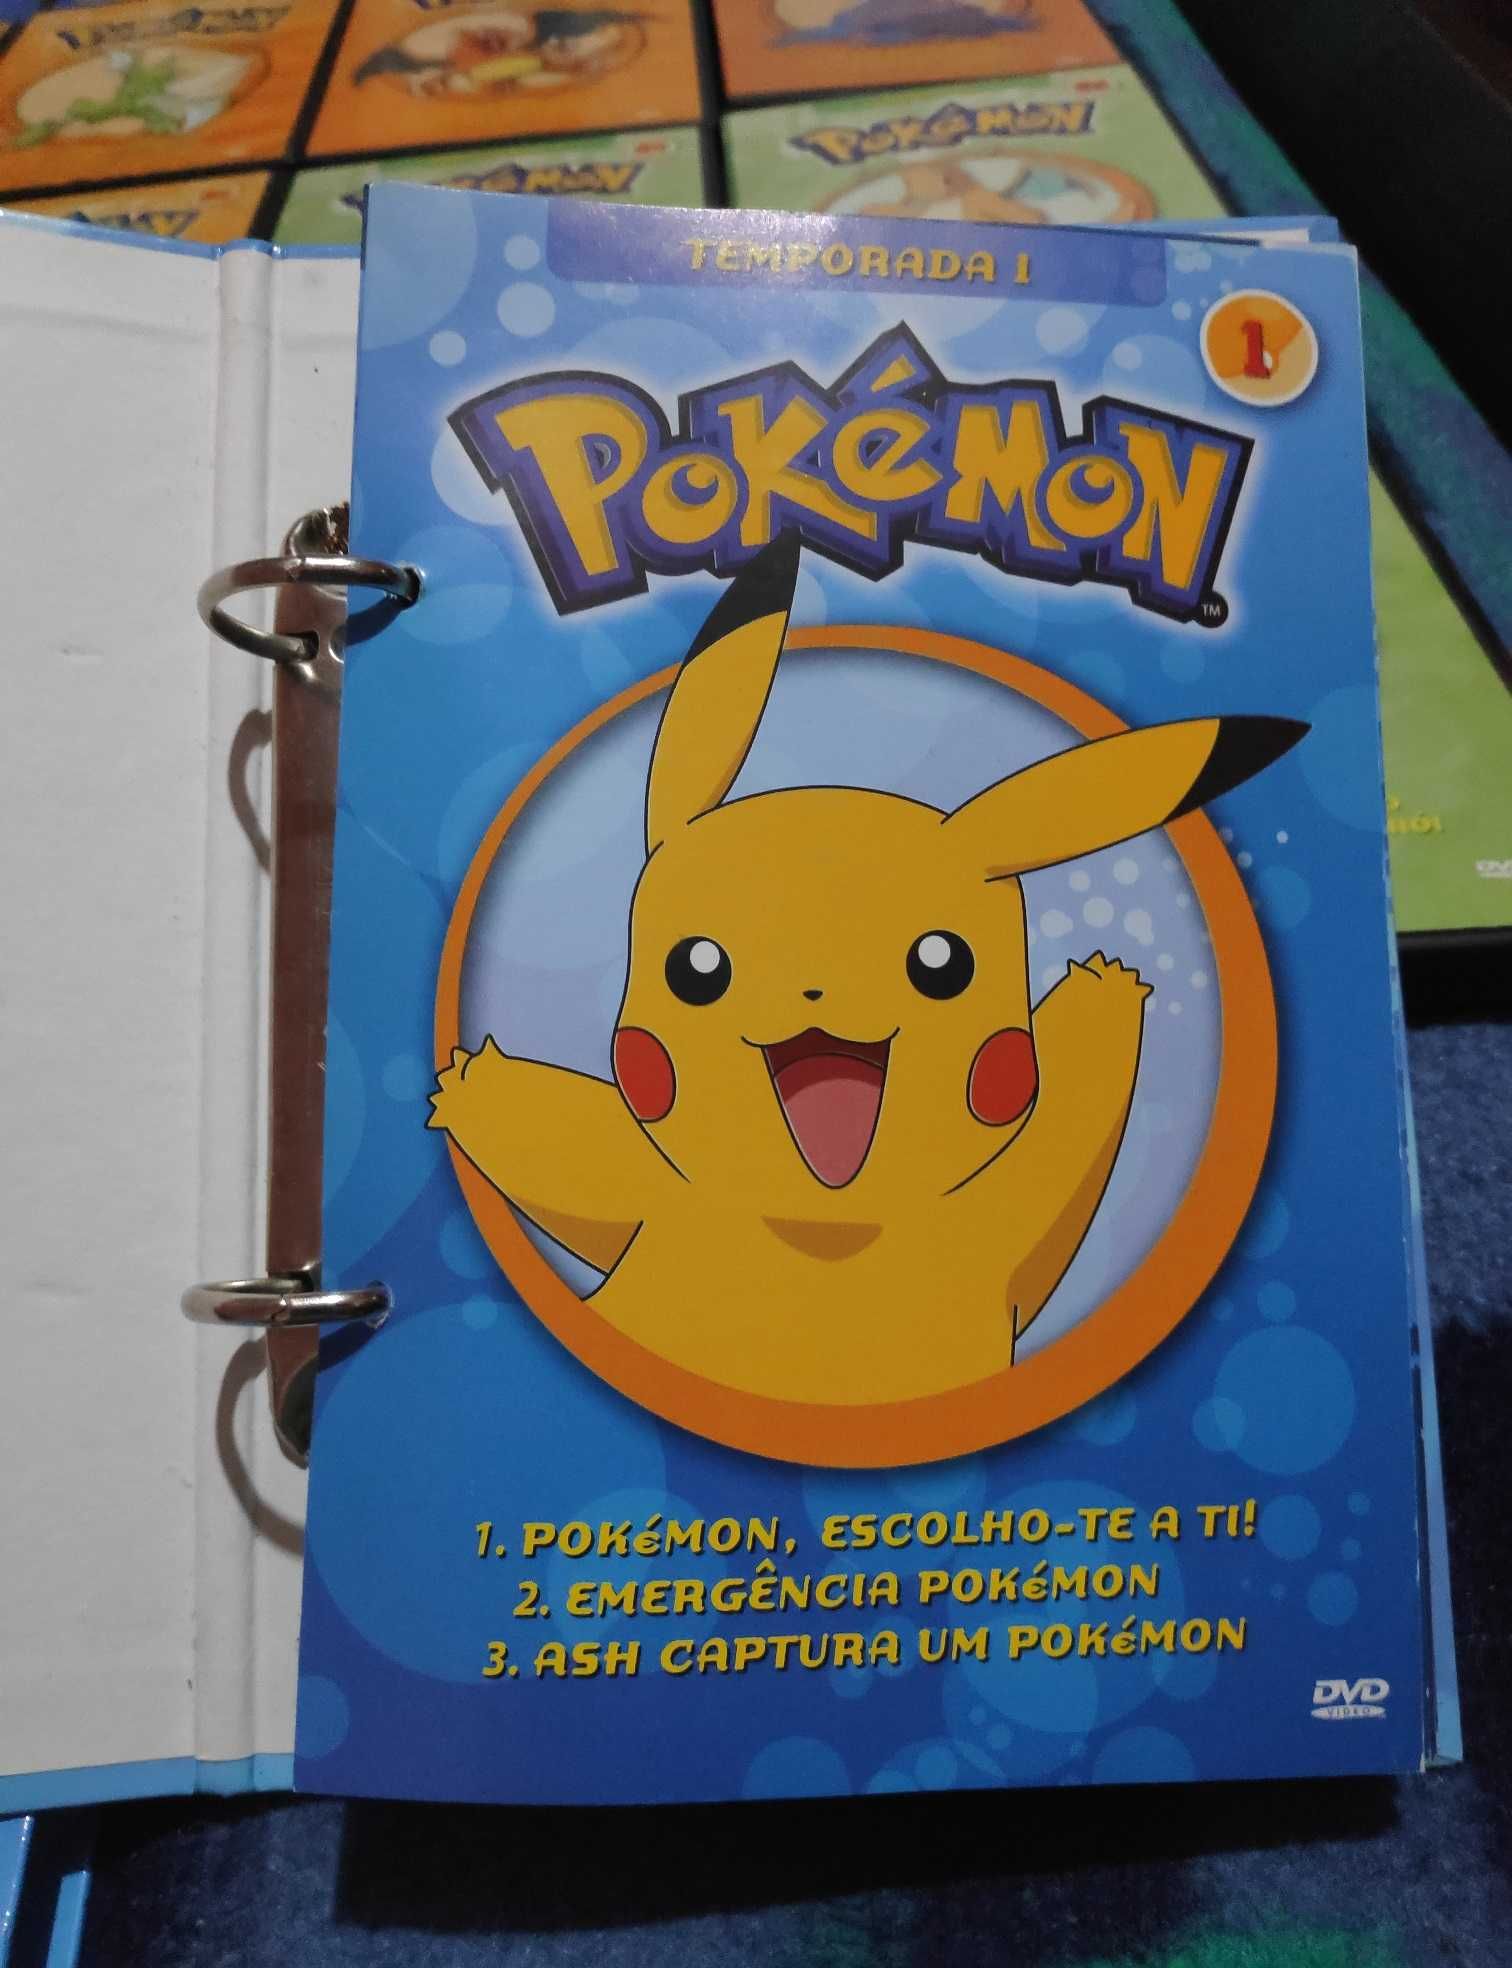 DVD Pokémon - Temporada 1, 2, 3 [Coleção completa]